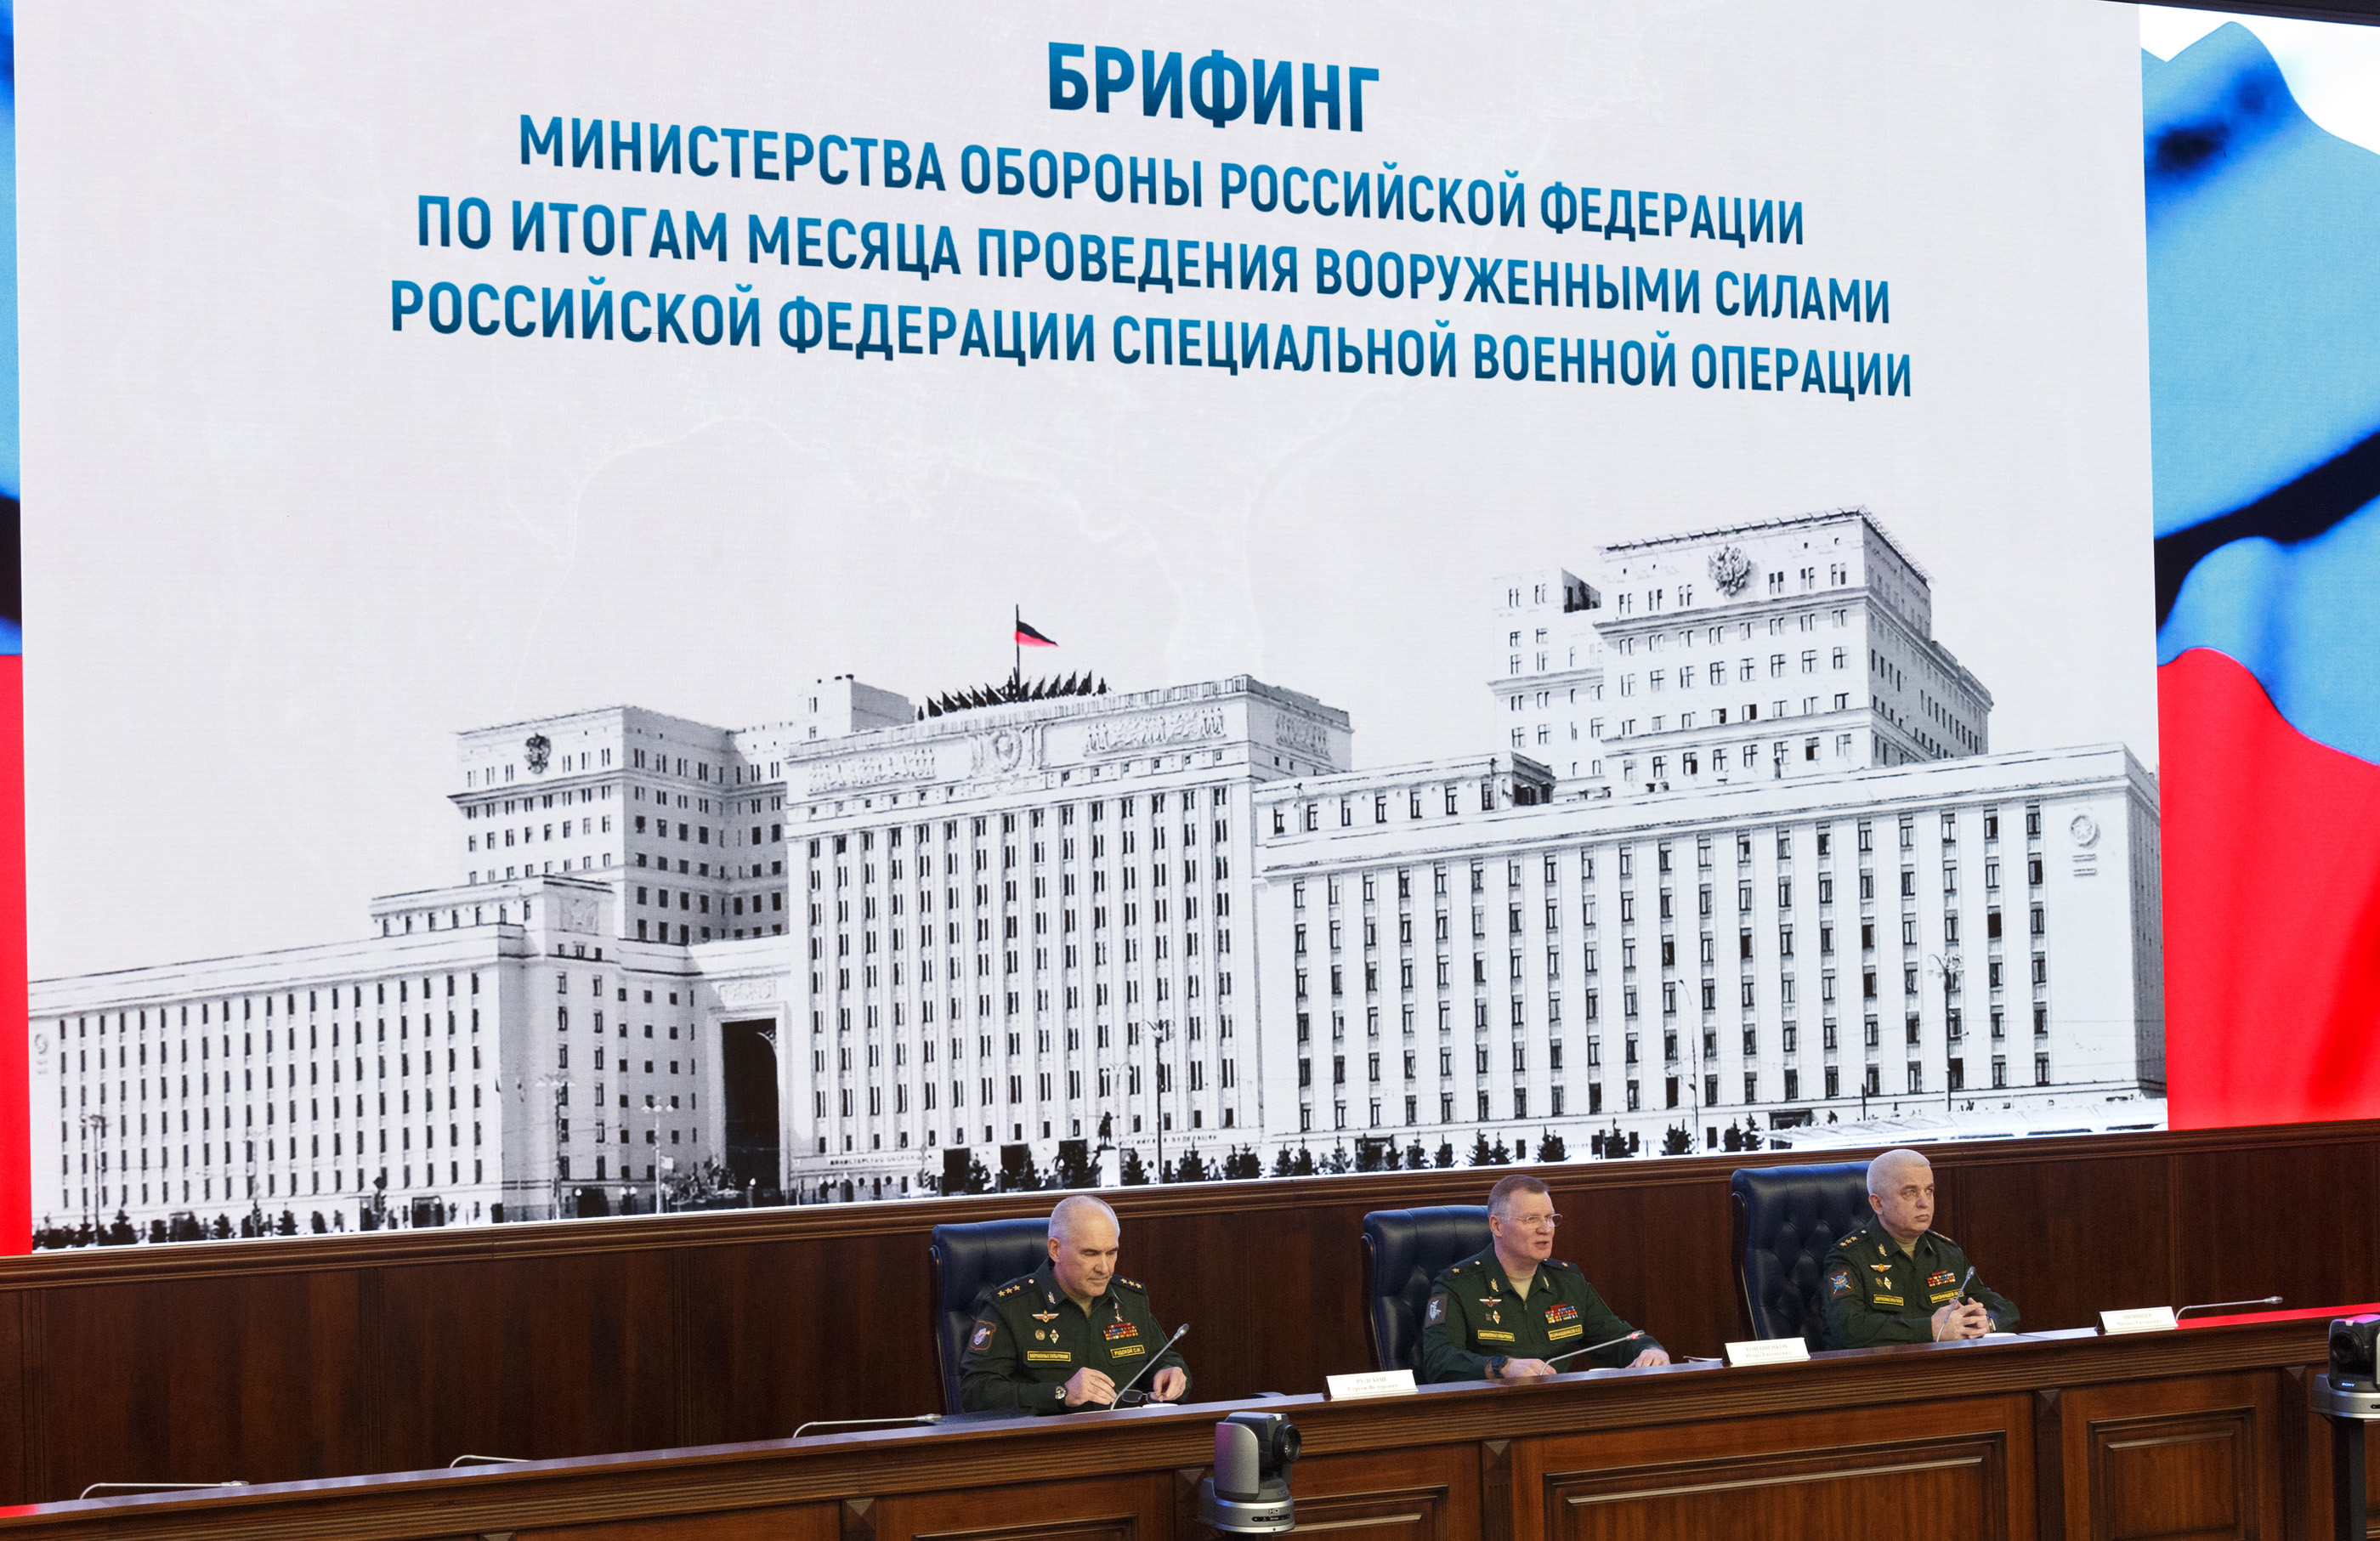 Обороны россии министерство Министерство обороны